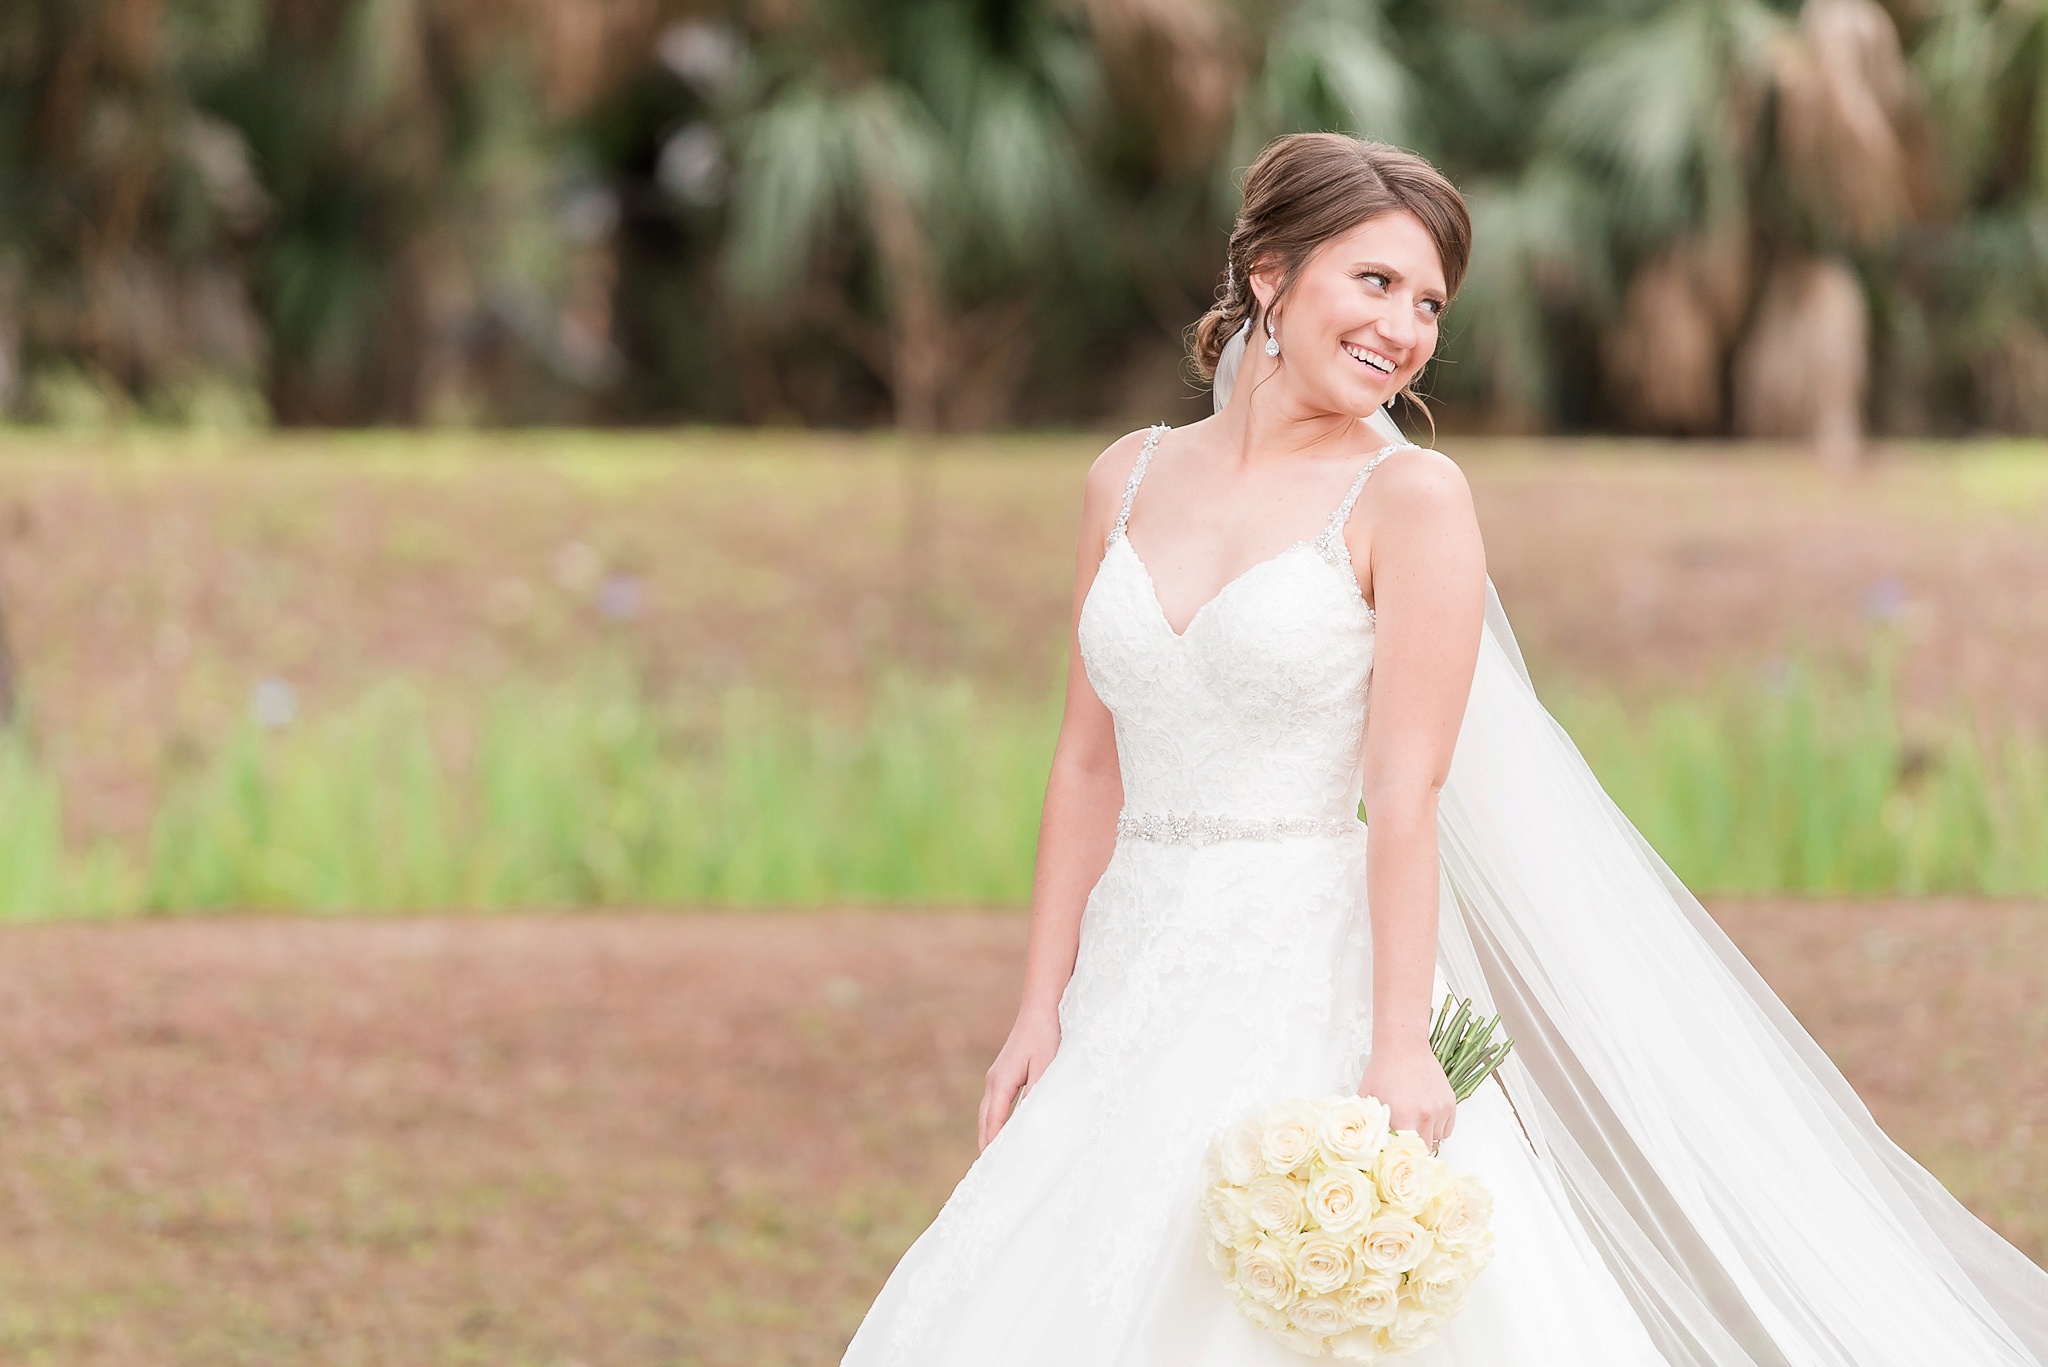 Niceville Destin Florida Wedding | Birmingham Alabama Wedding Photographers_0024.jpg